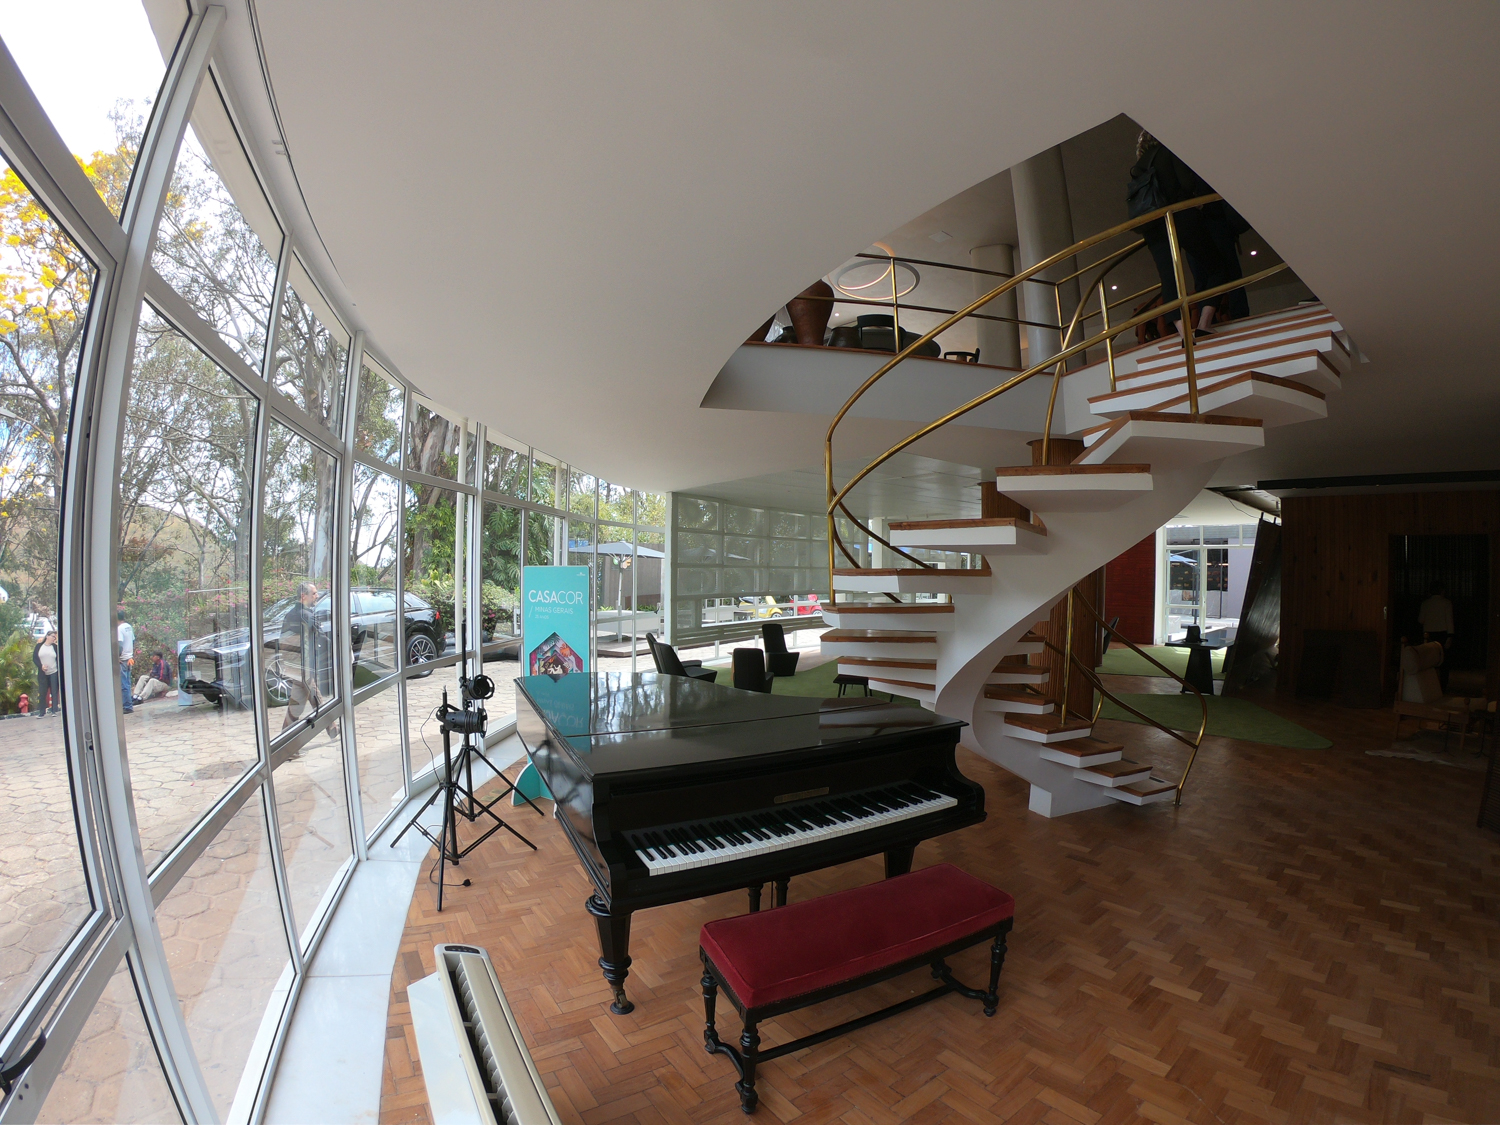 Piano de cauda e escada em espiral no edifício que teve projeto original de Niemeyer. (Foto Thiago Ventura/DomTotal)